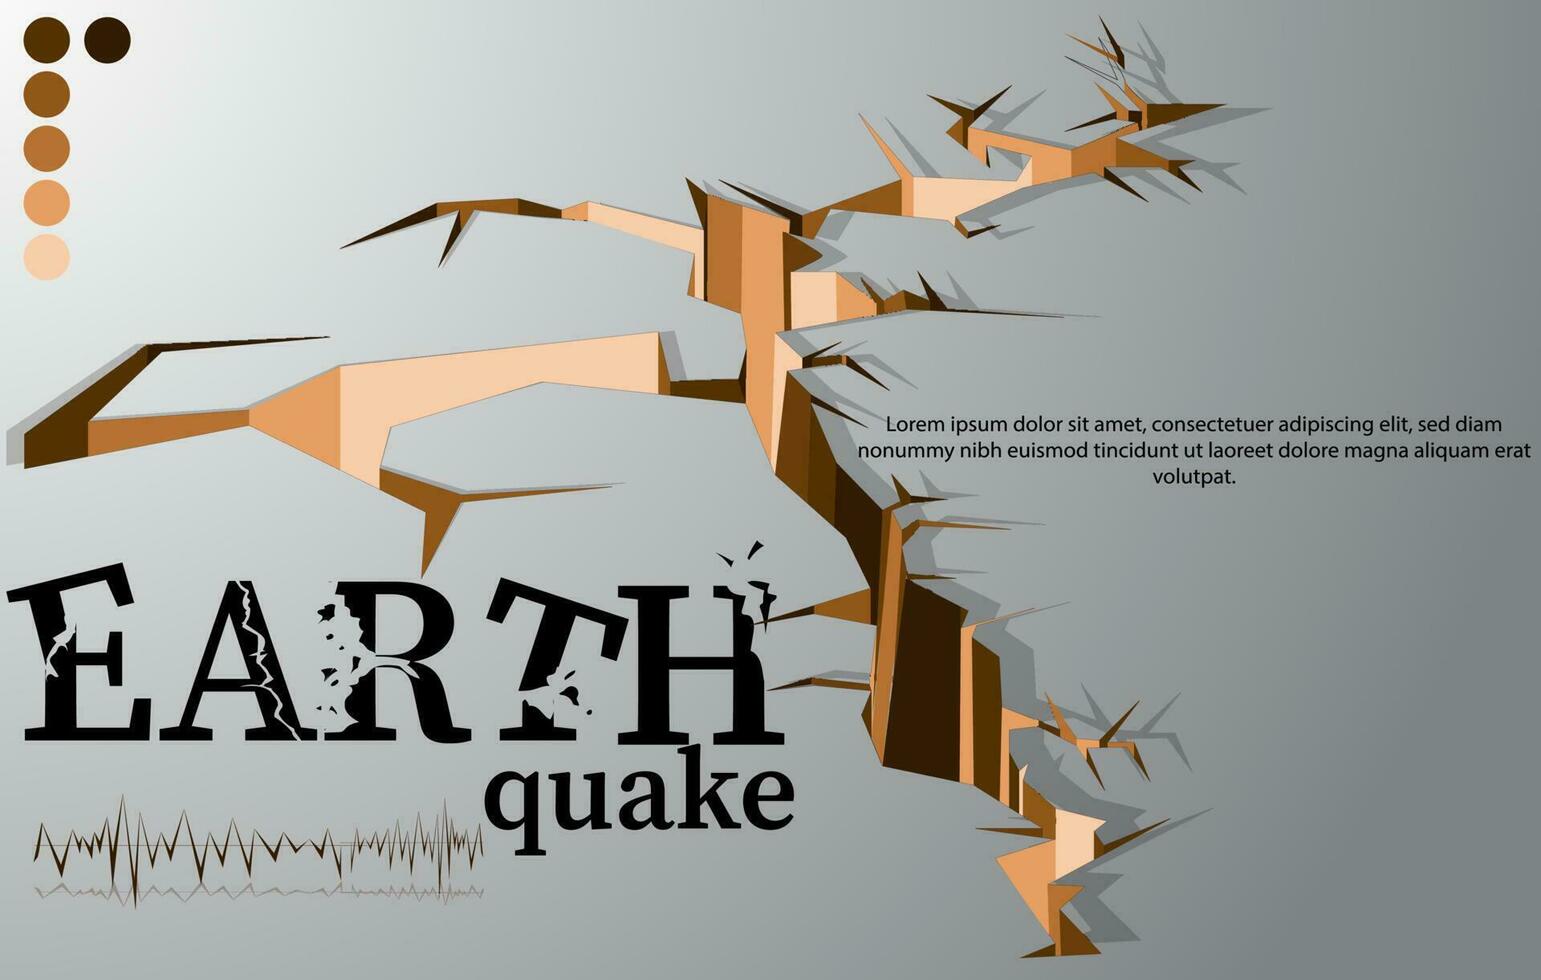 terremoto vettore illustrazione terra crepe e sismico onde